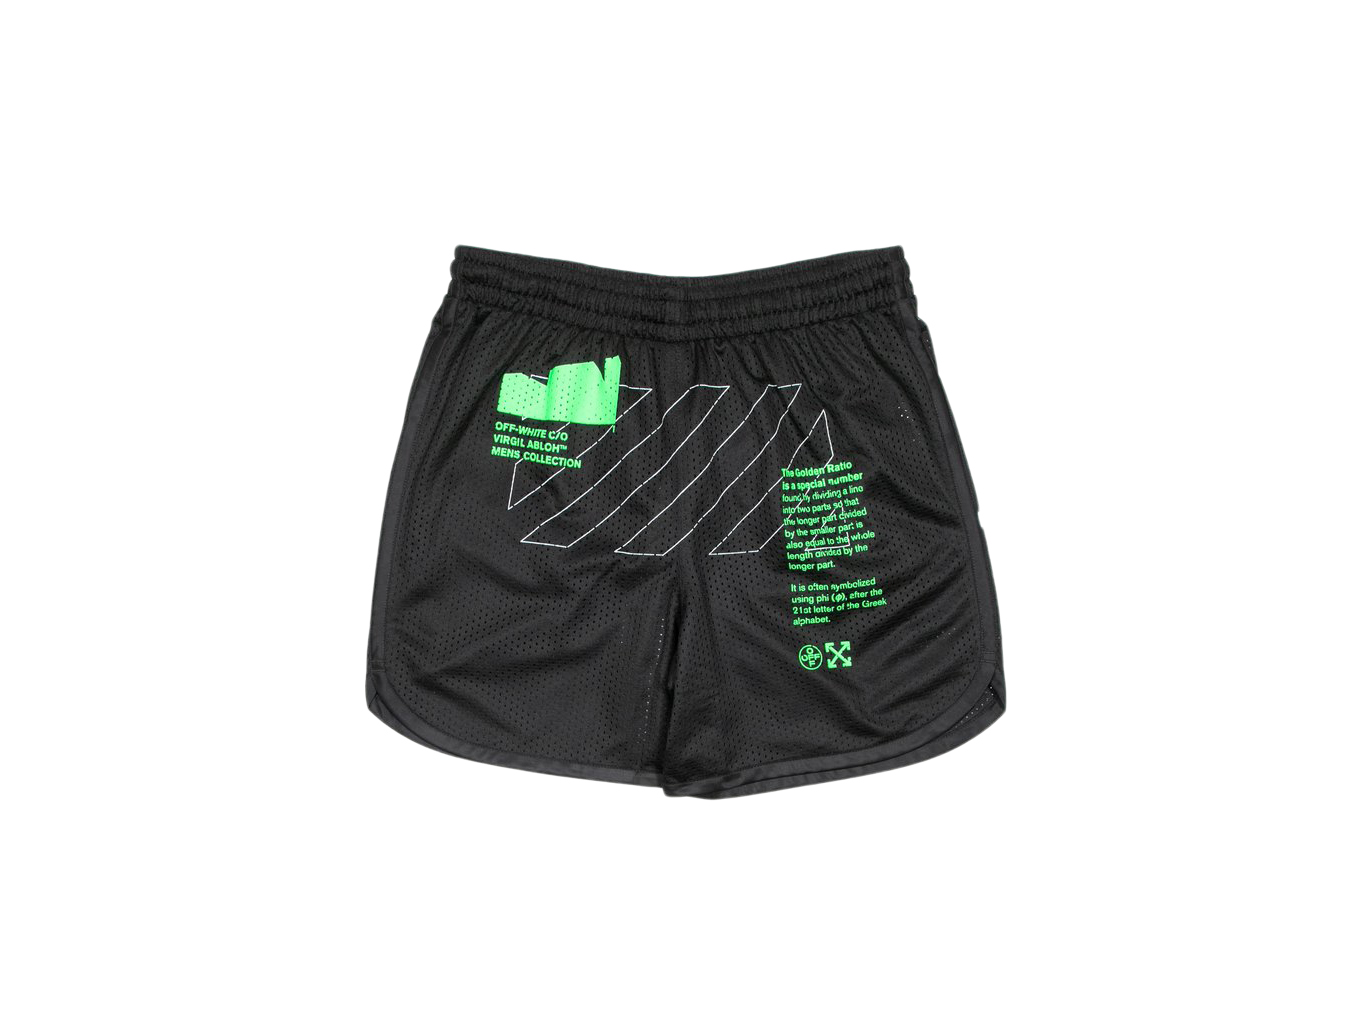 ショートパンツ OFF-WHITE Arch Shapes Mesh Shorts Black/Brilliant Green Men's ...ショートパンツ